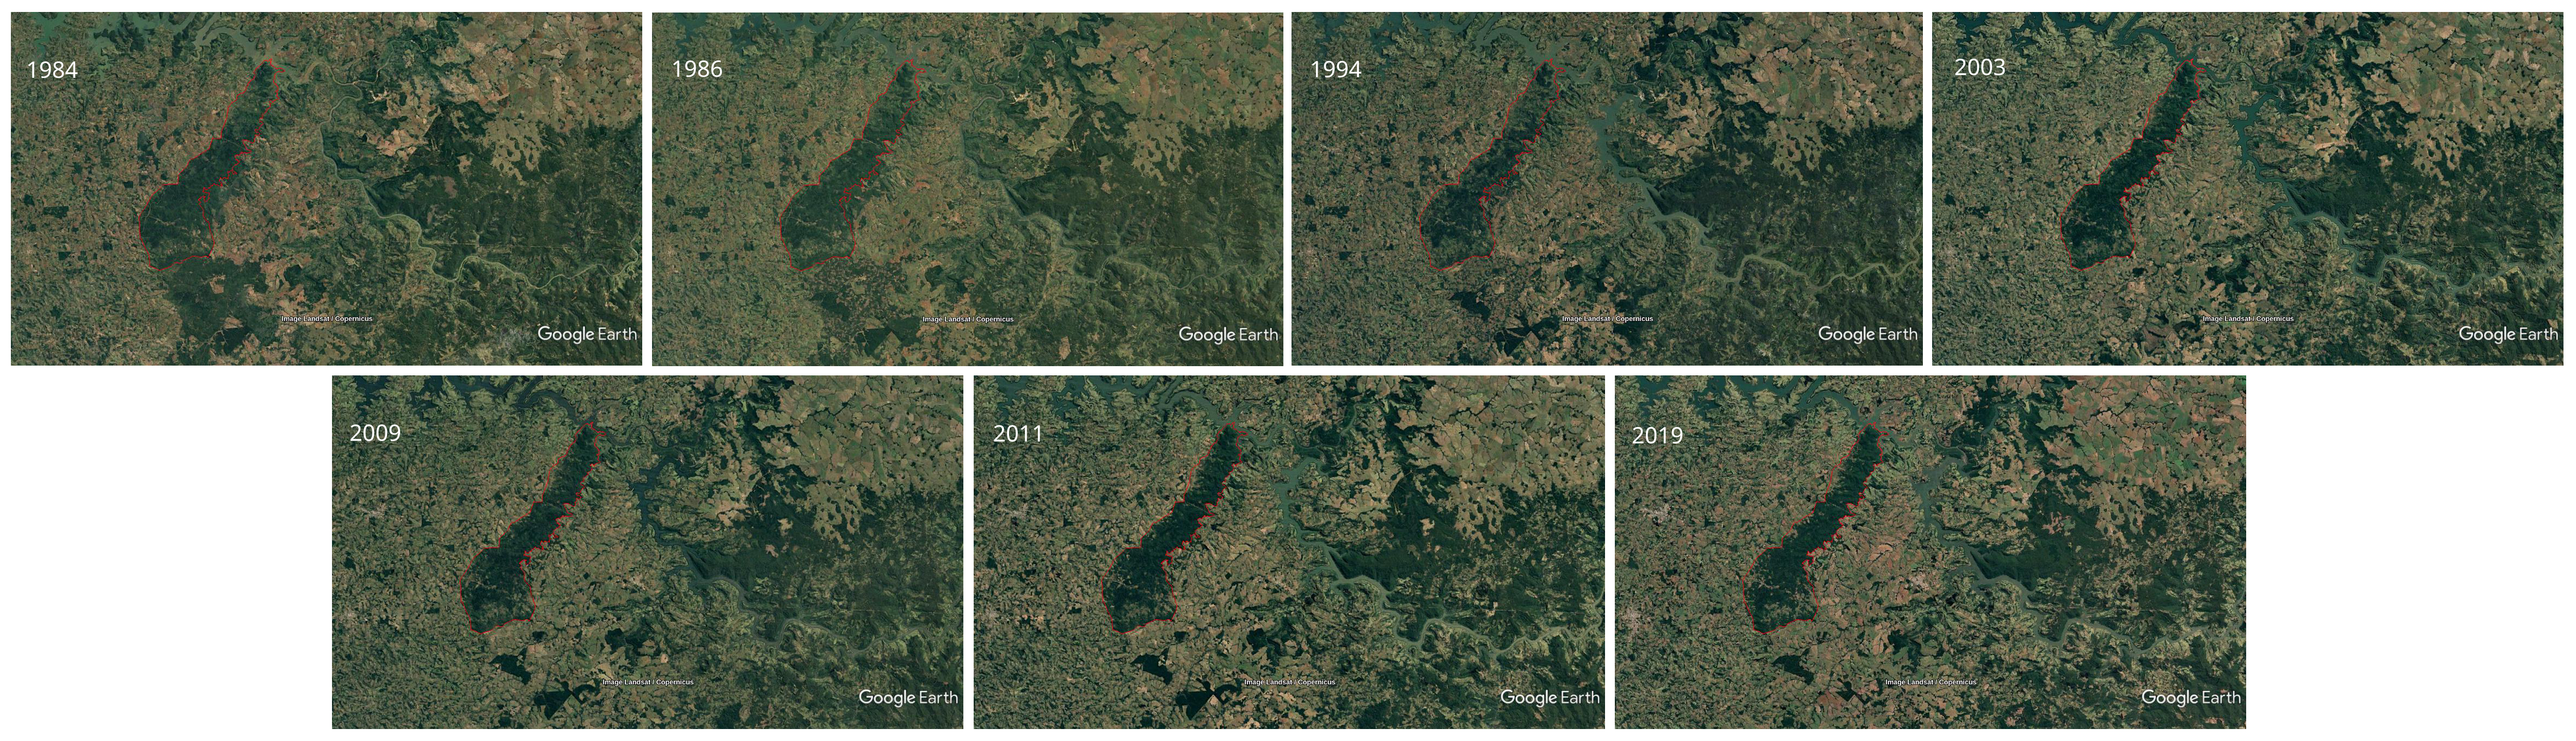 Mosaico 1. Evolução do desmatamento na TI Mangueirinha e entorno geográfico